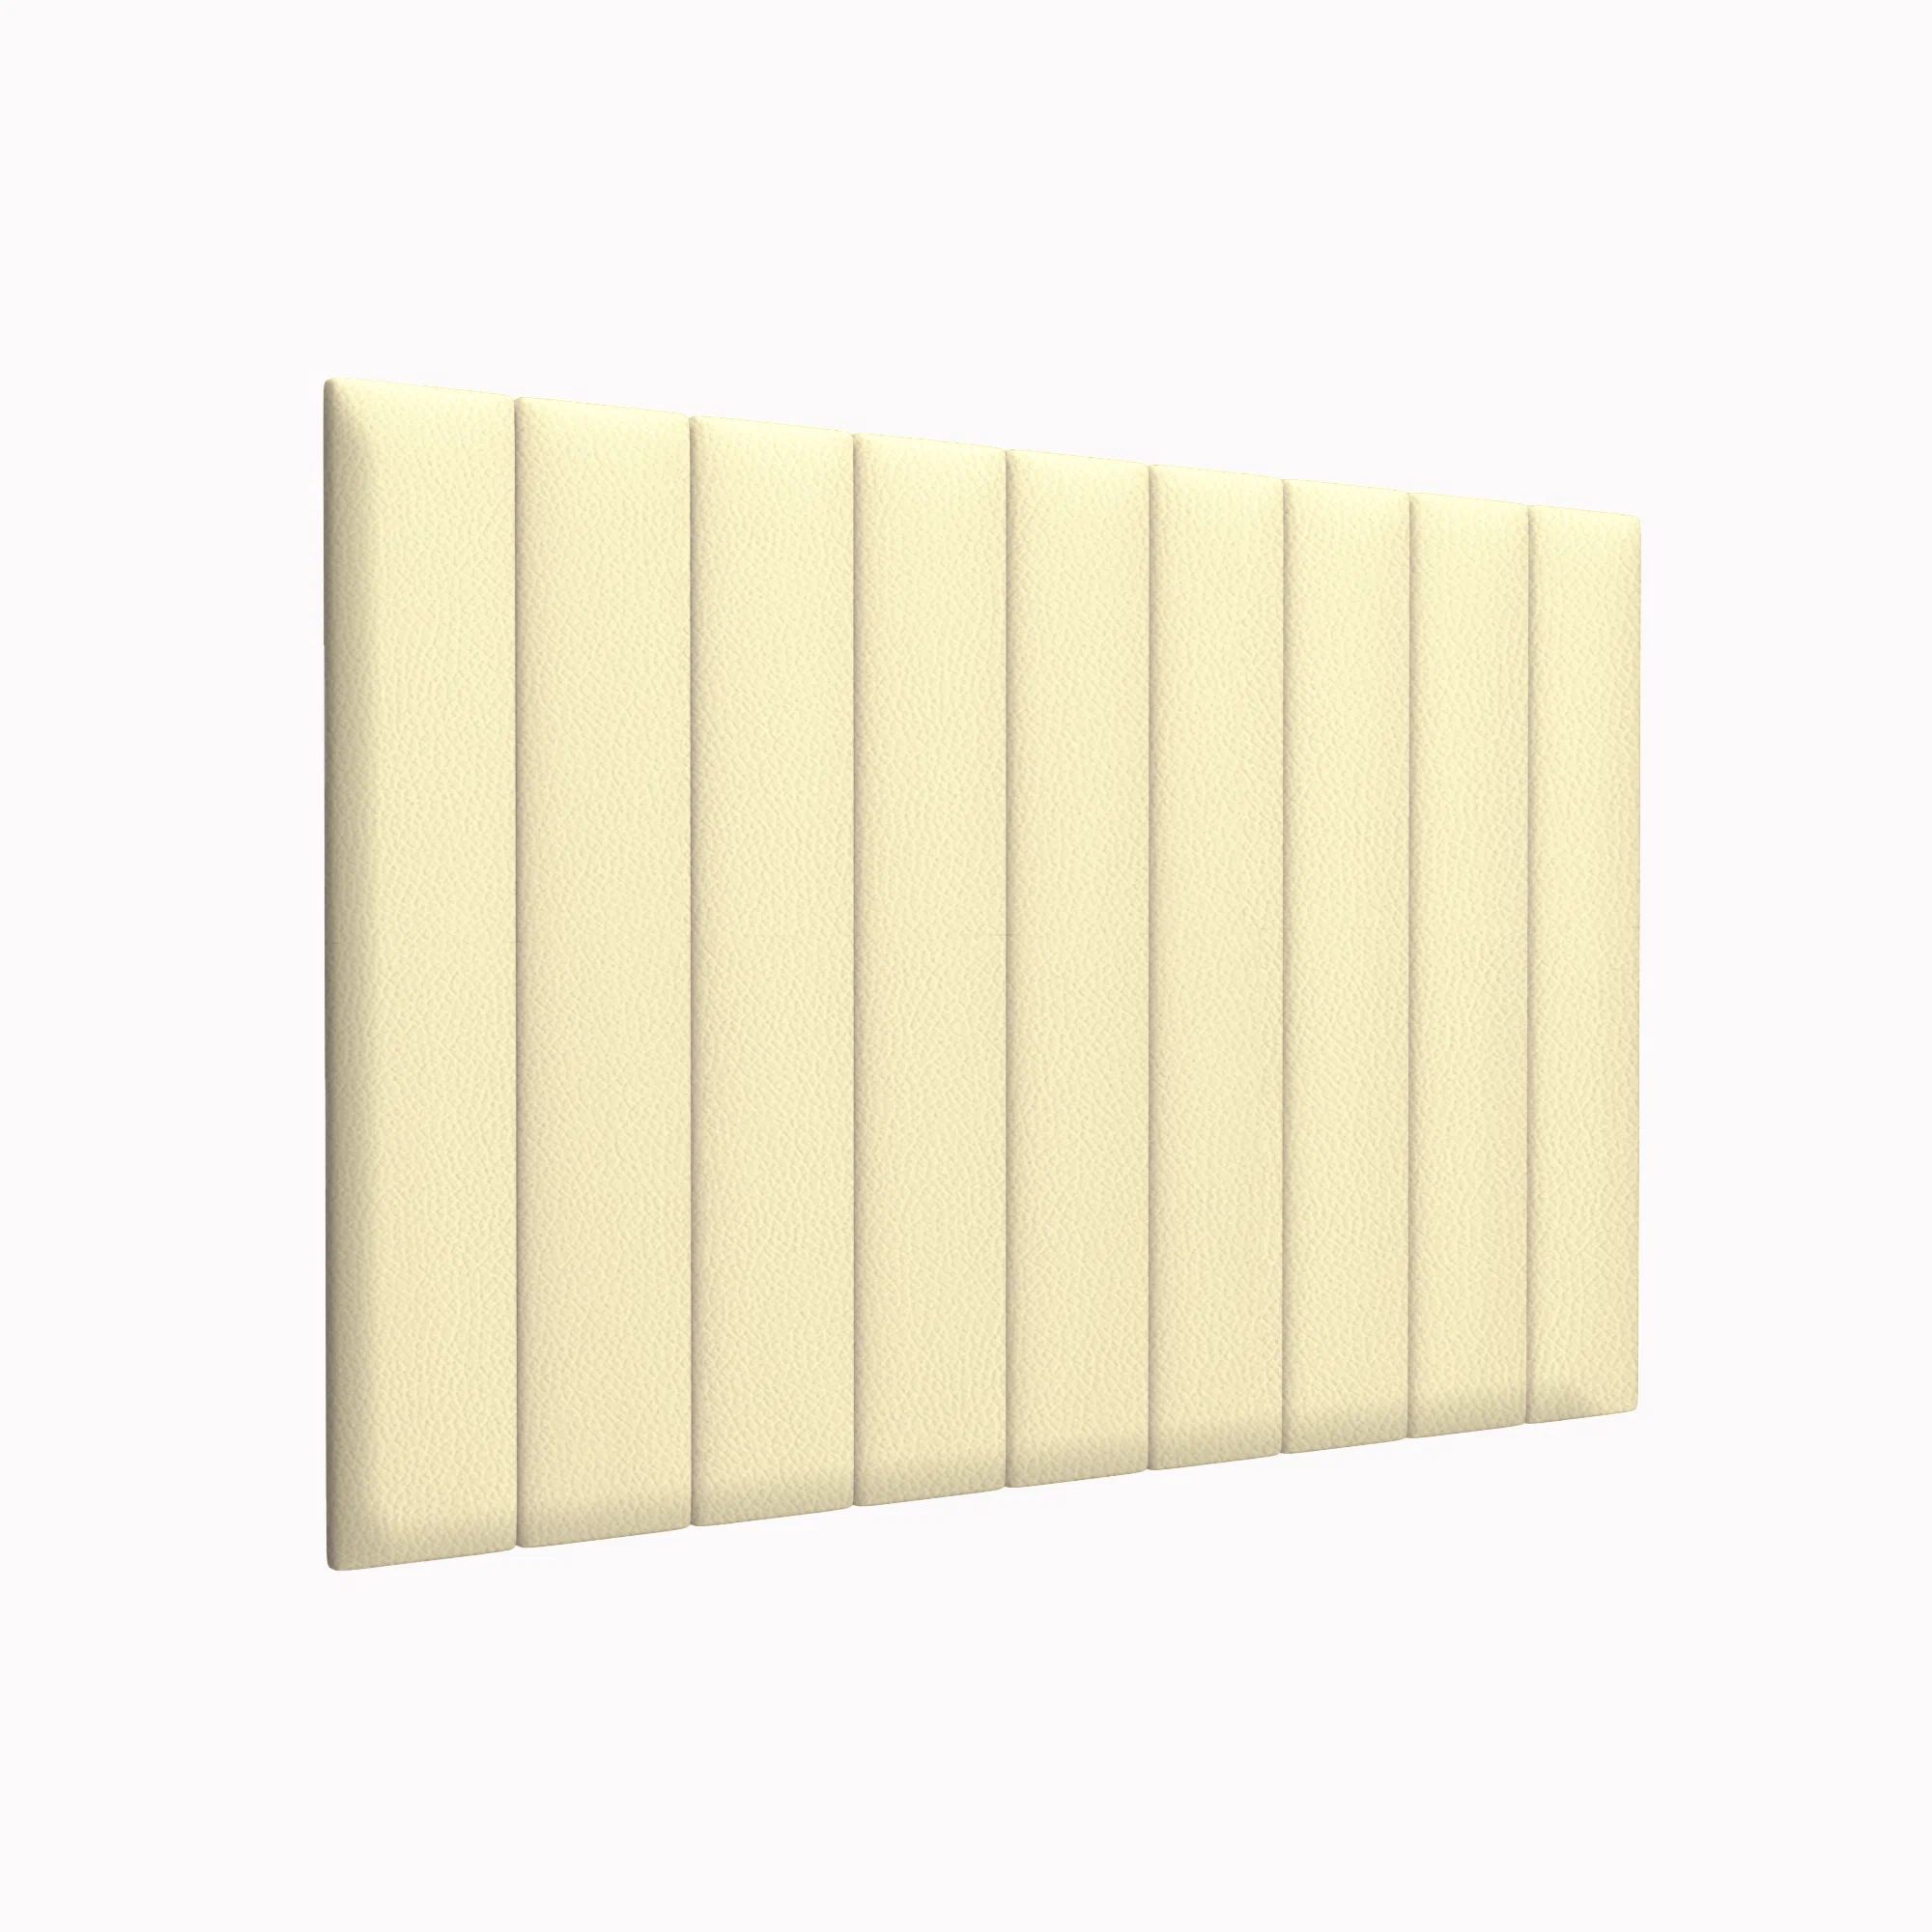 Стеновая панель Eco Leather Vanilla 15х90 см 4 шт.